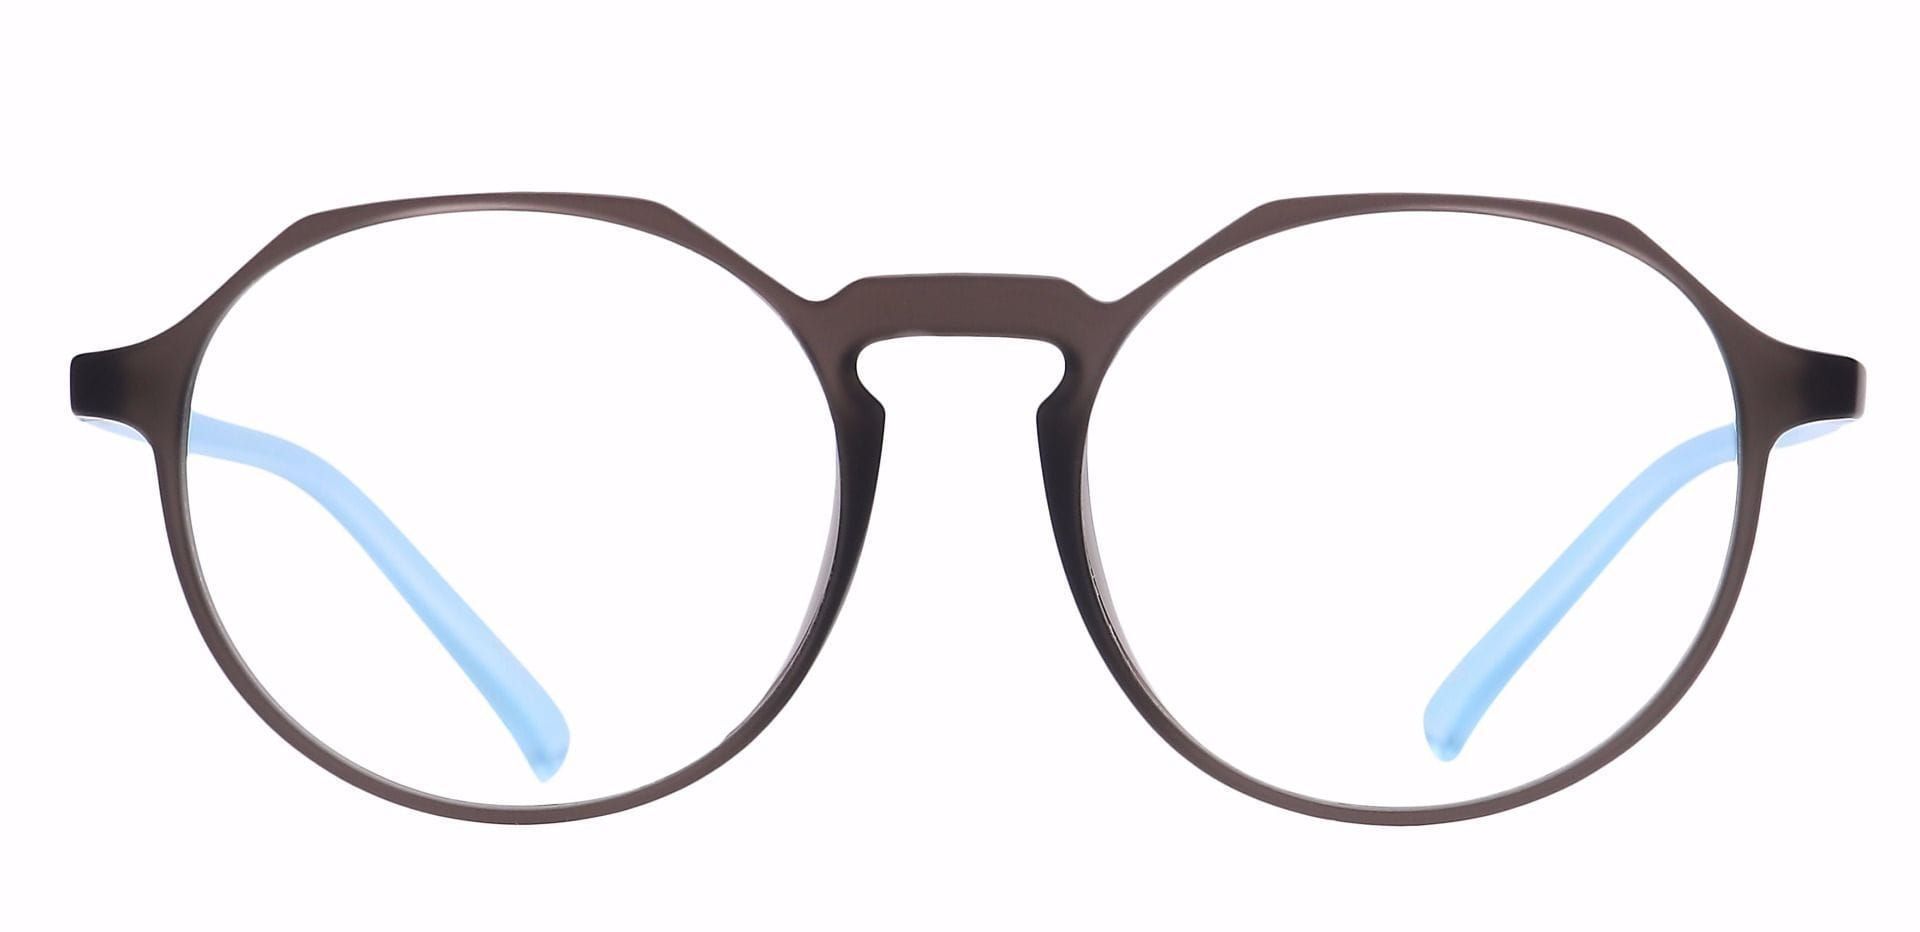 Dash Oval Progressive Glasses - Gray